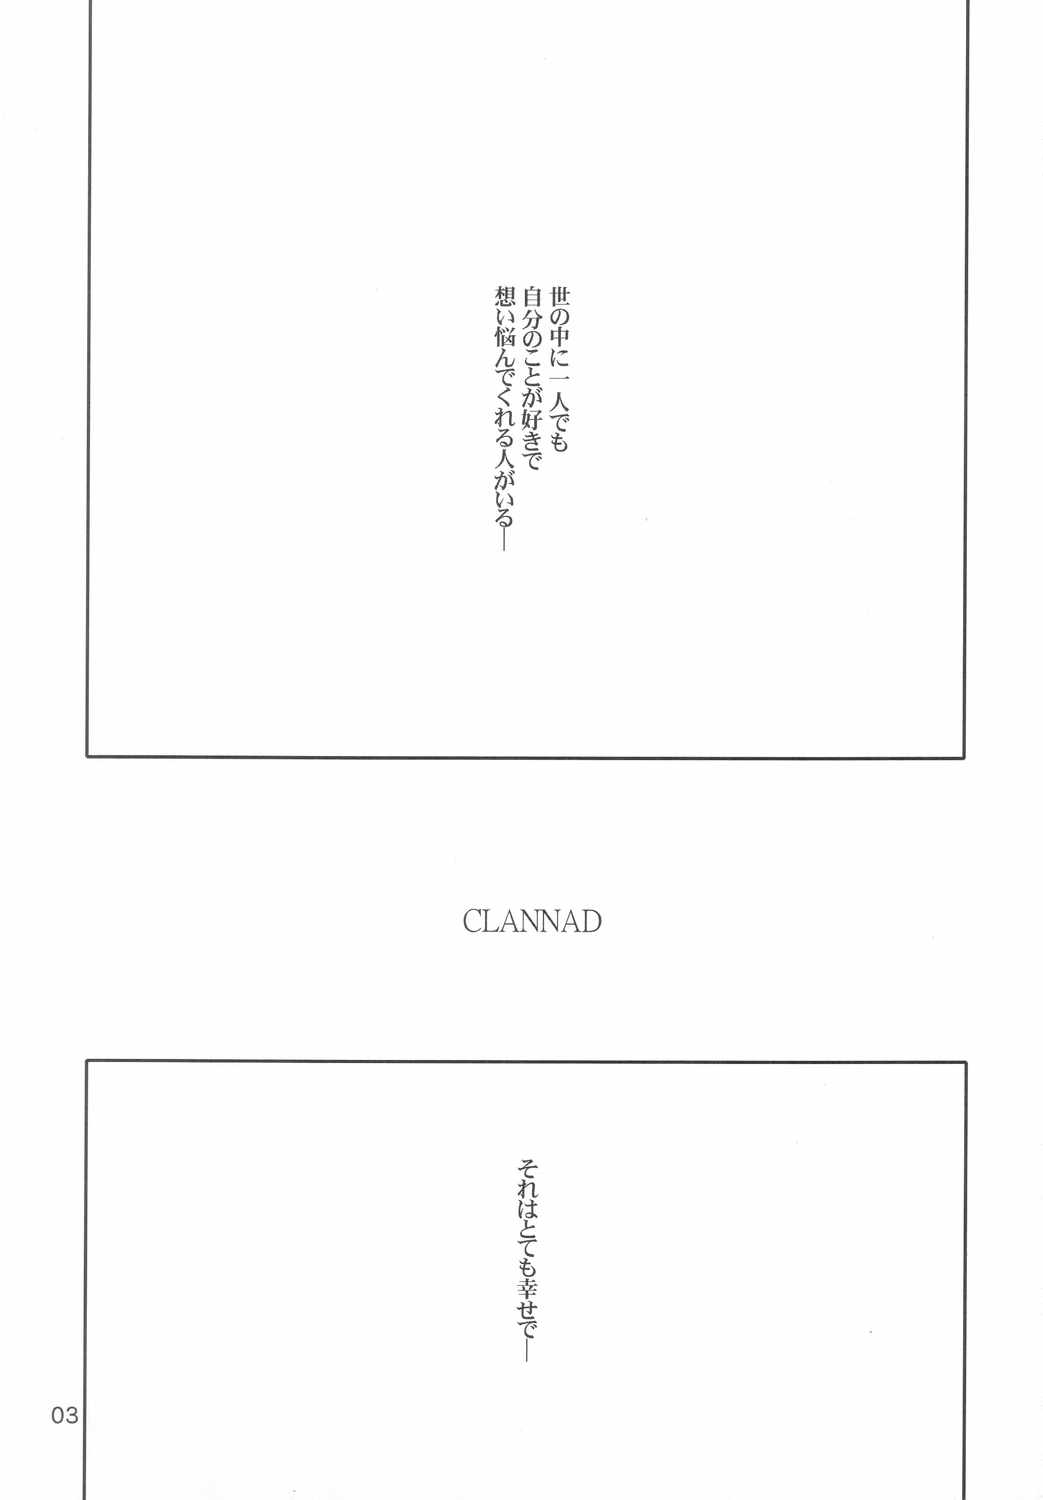 (C66)[Uge Man (Ugeppa)] Maki Clannad (Clannad) (C66)[うげ漫 (うげっぱ)] Maki Clannad (クラナド)